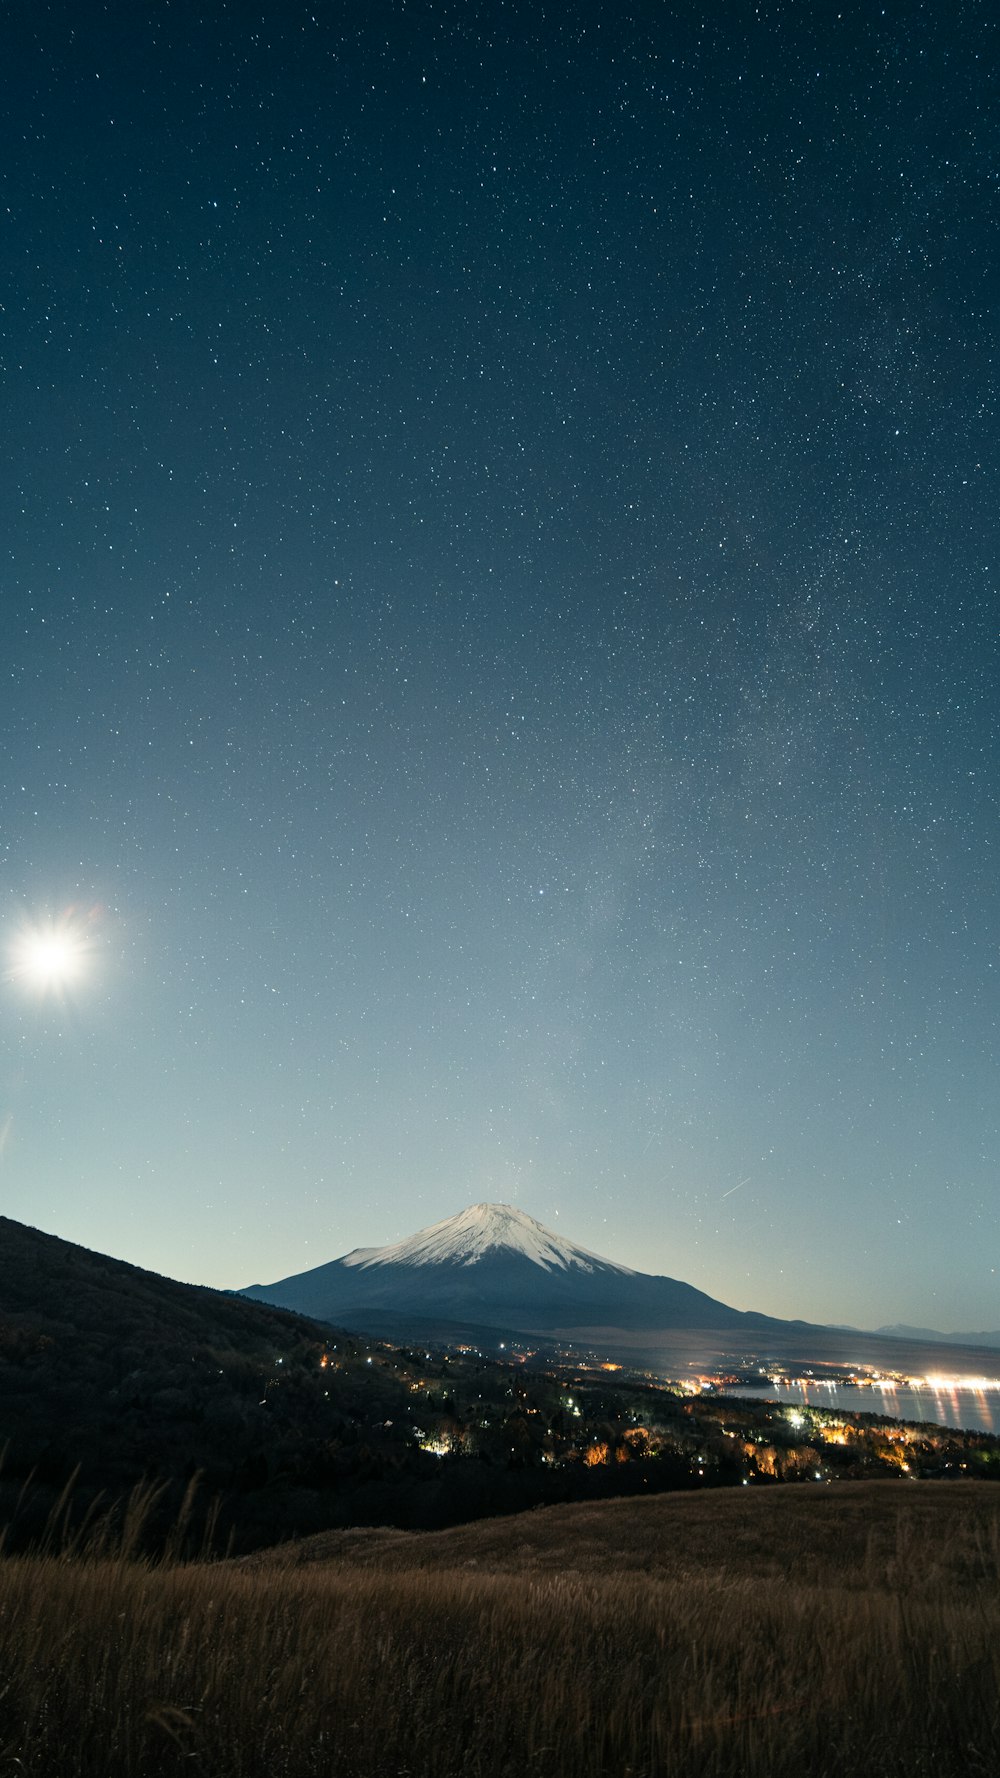 une vue du ciel nocturne avec une montagne en arrière-plan